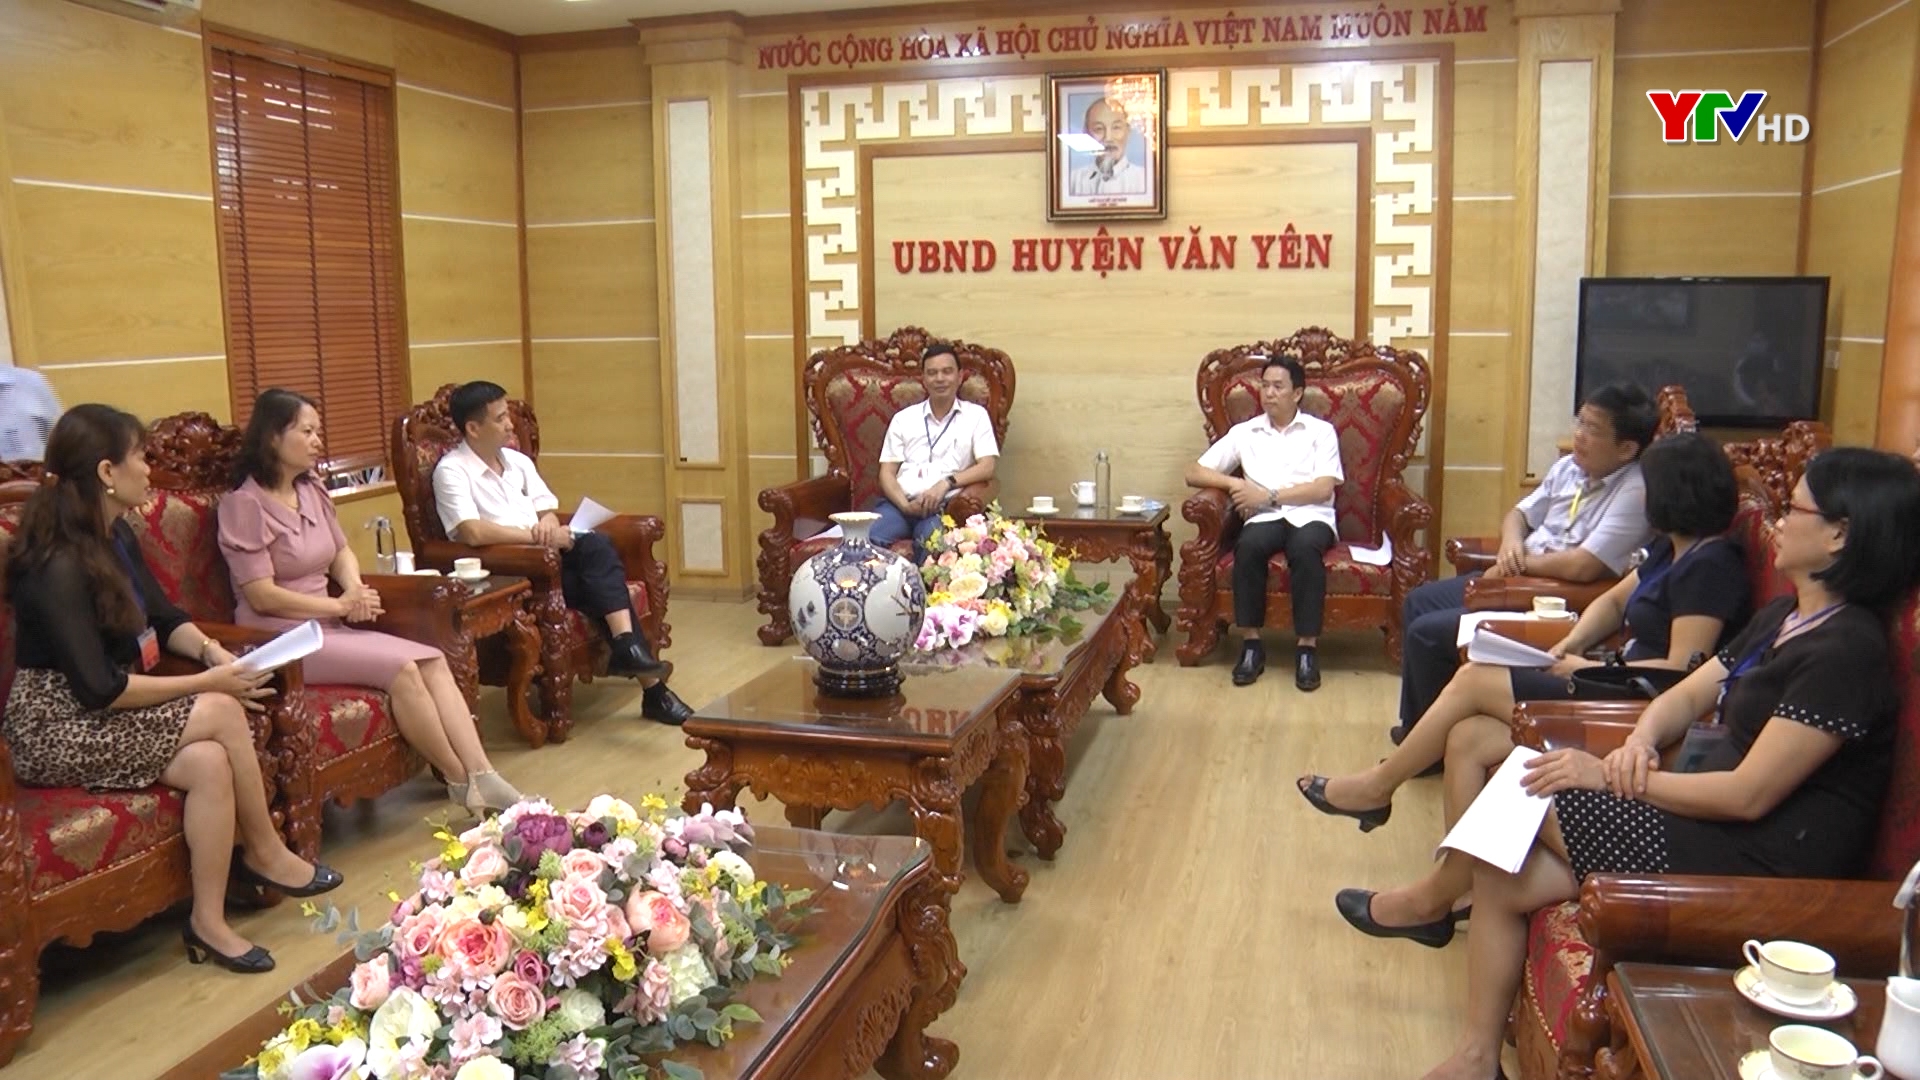 Đồng chí Dương Văn Tiến – Phó Chủ tịch UBND tỉnh kiểm tra thi tốt nghiệp THPT tại huyện Văn Yên